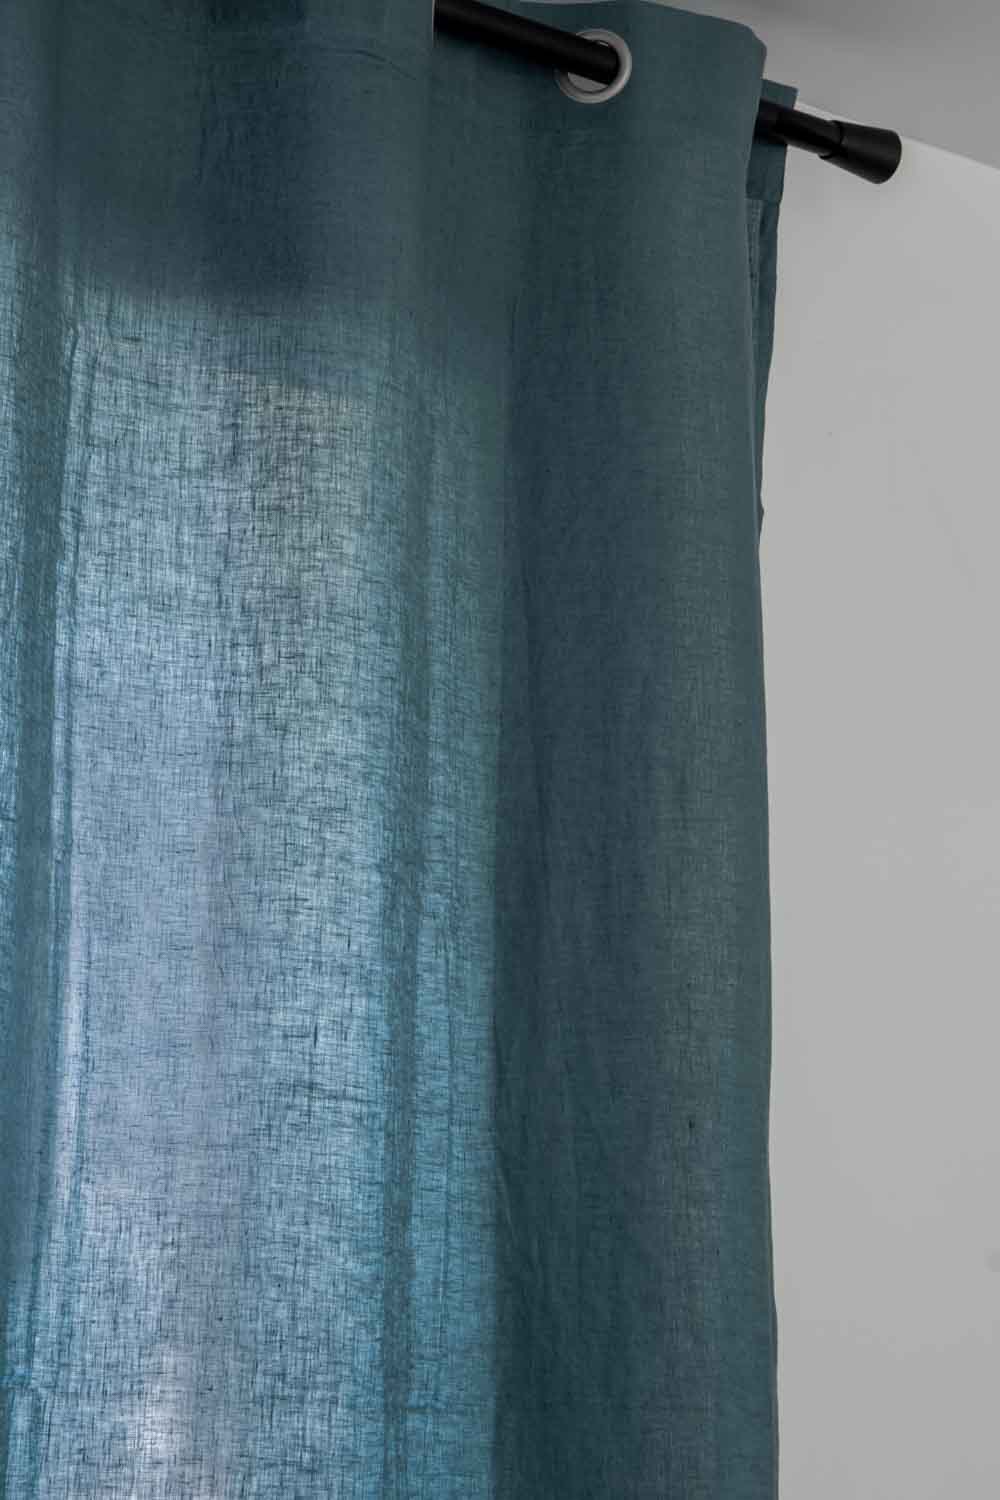 Rideaux en lin lavé Zeff - 140x280 cm - Vivaraise, Prusse